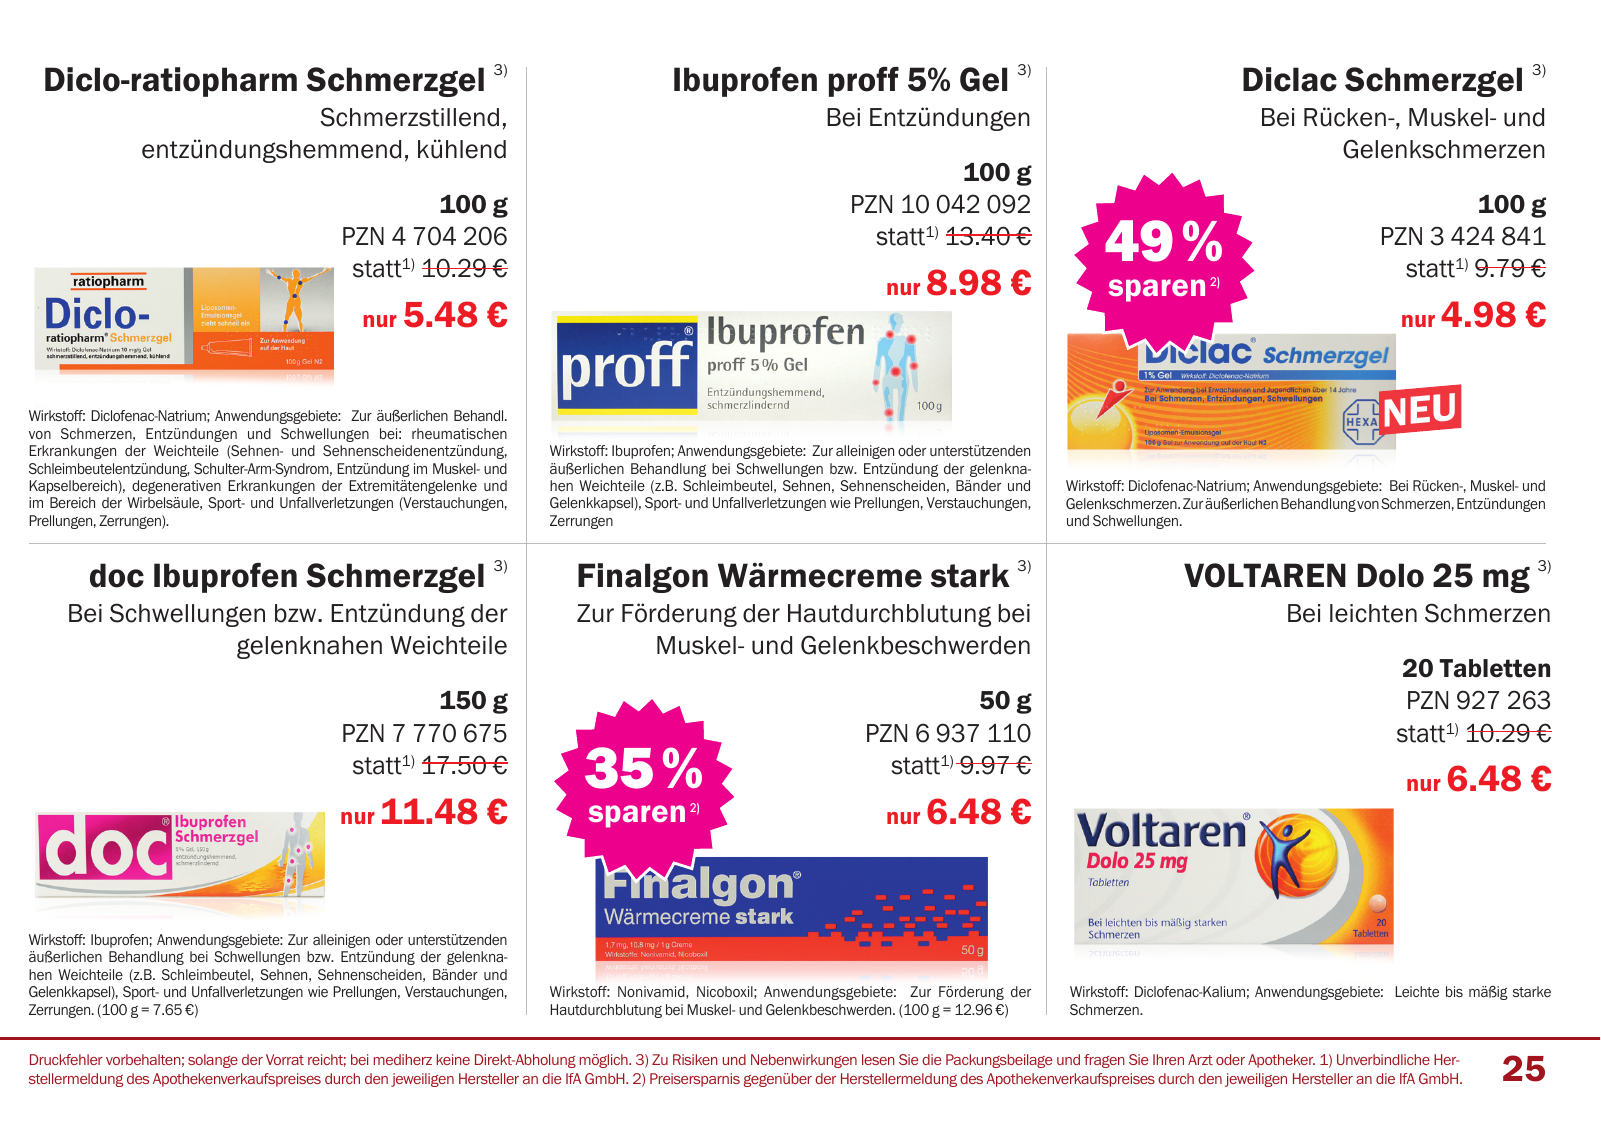 Vorschau Mediherz Katalog Herbst/Winter 2015/16 Seite 25